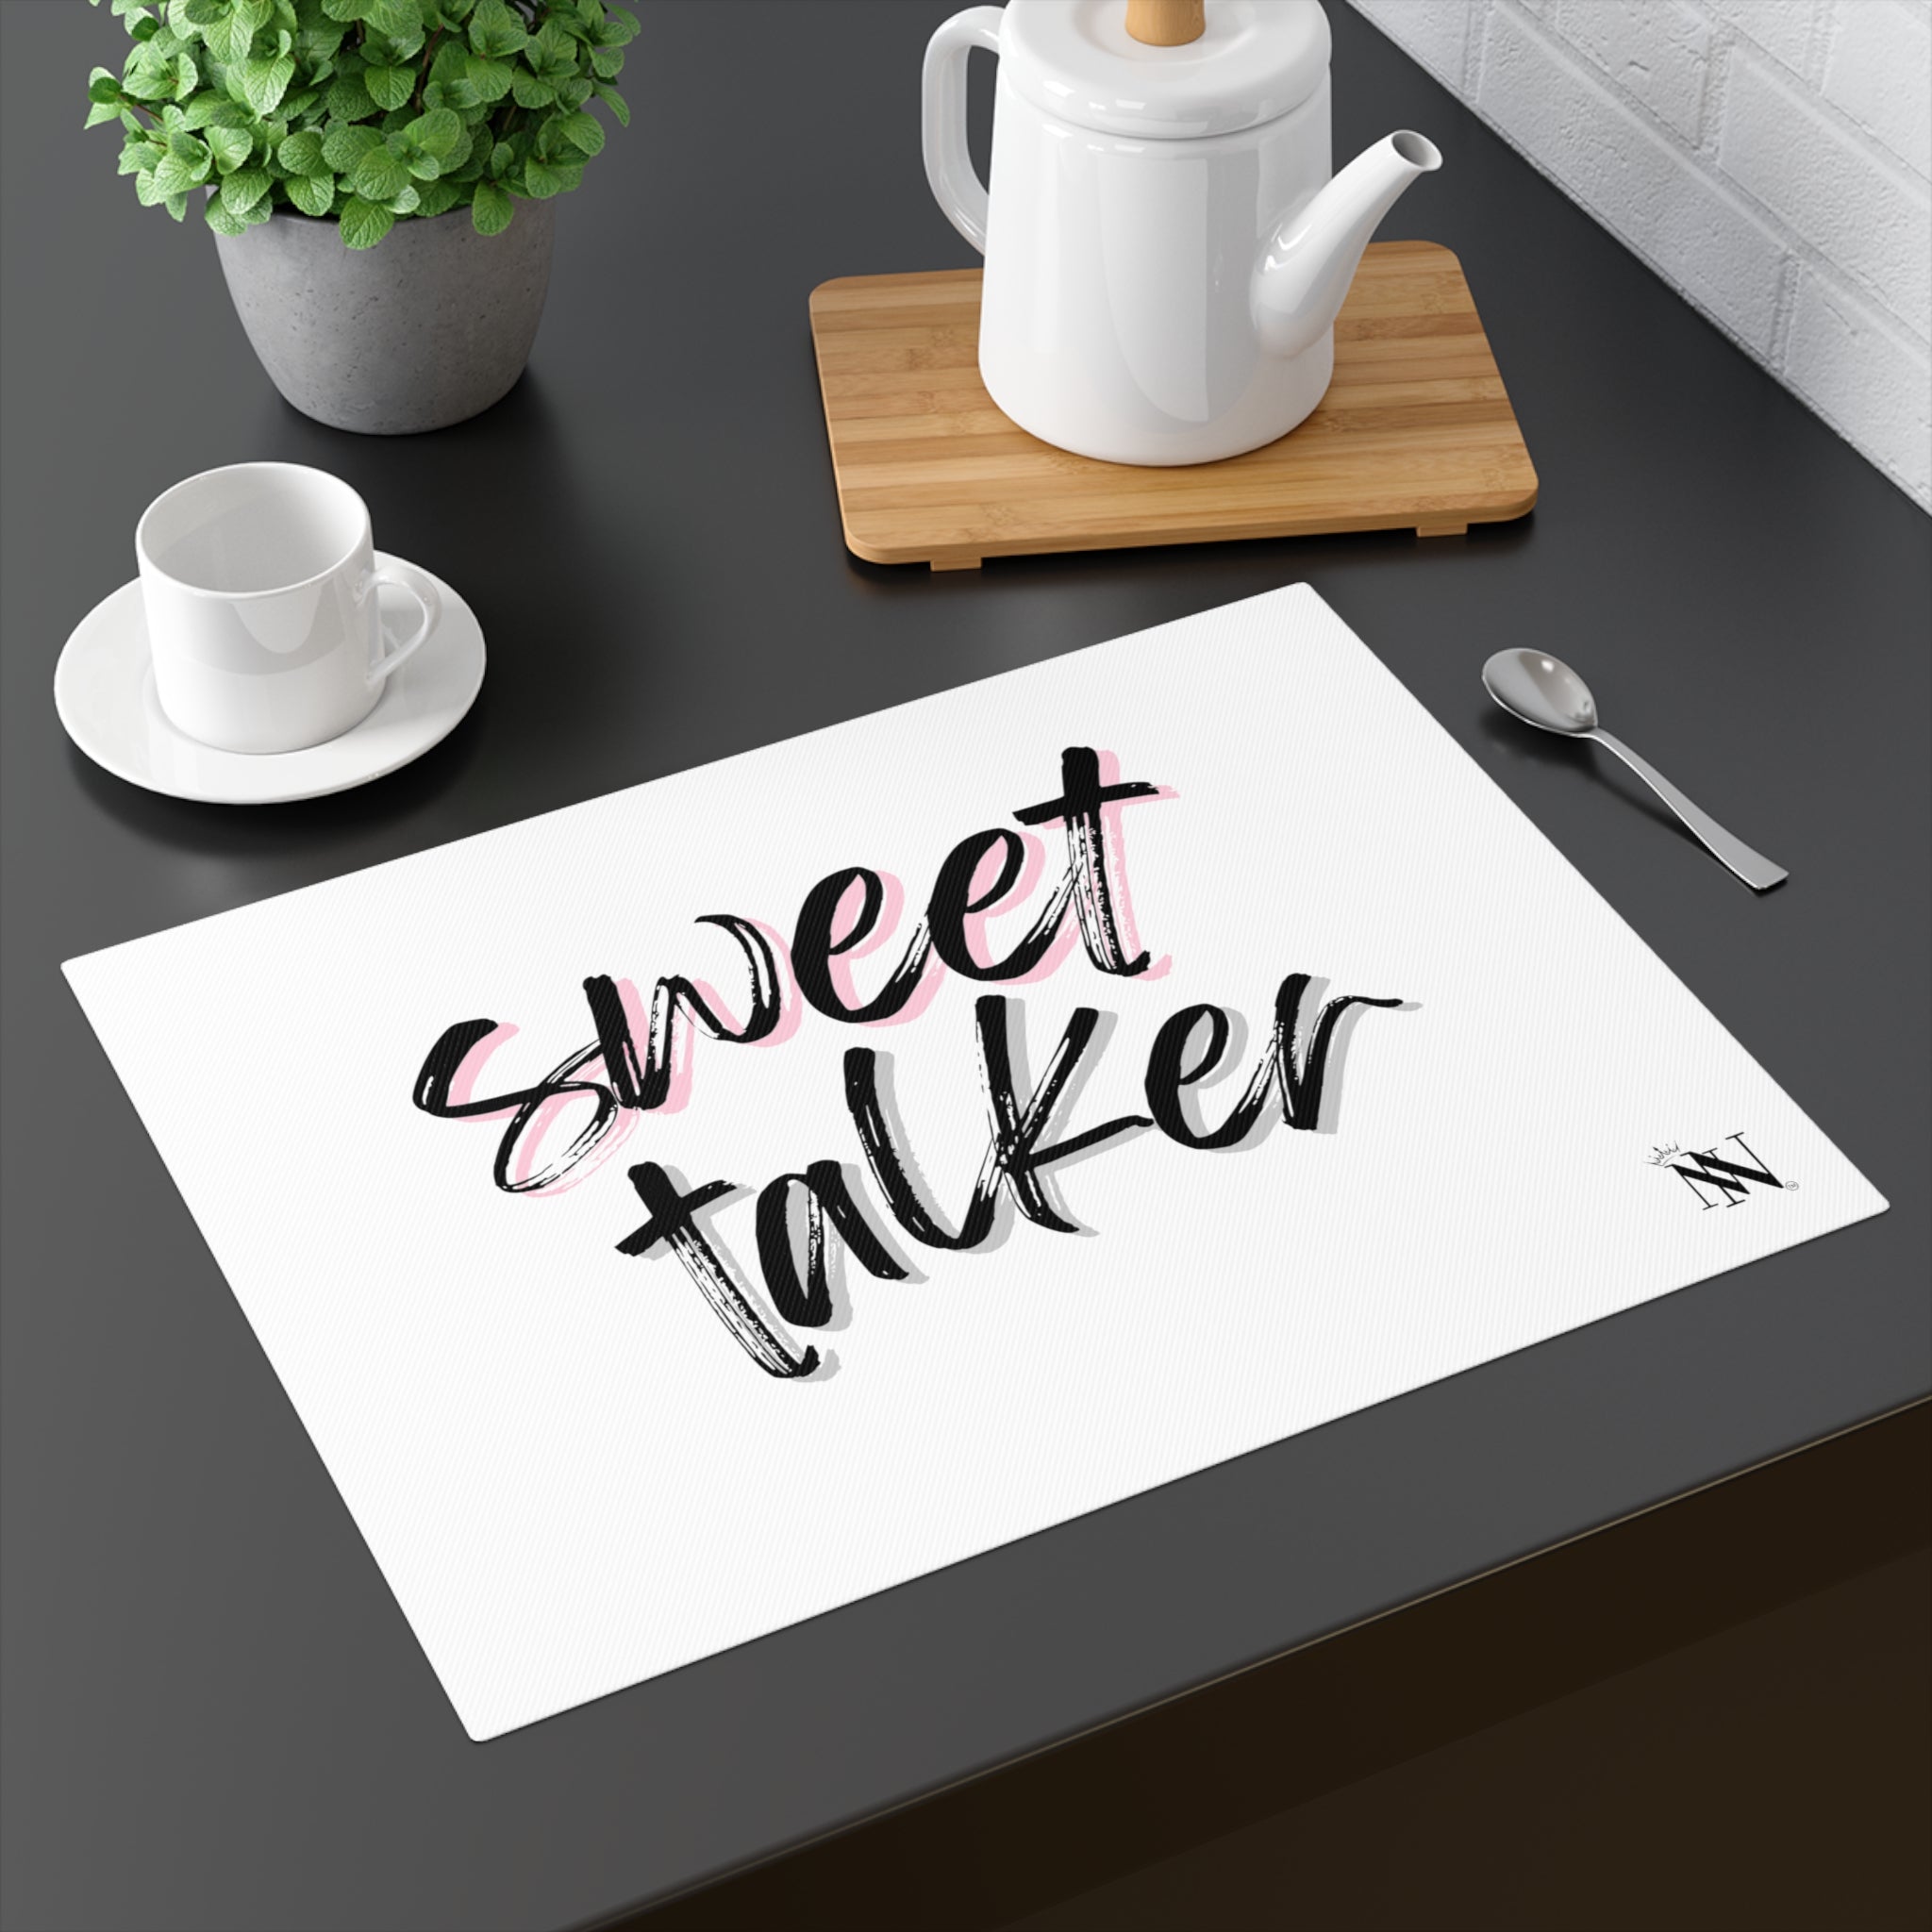 Sweet Talker sex toys mat